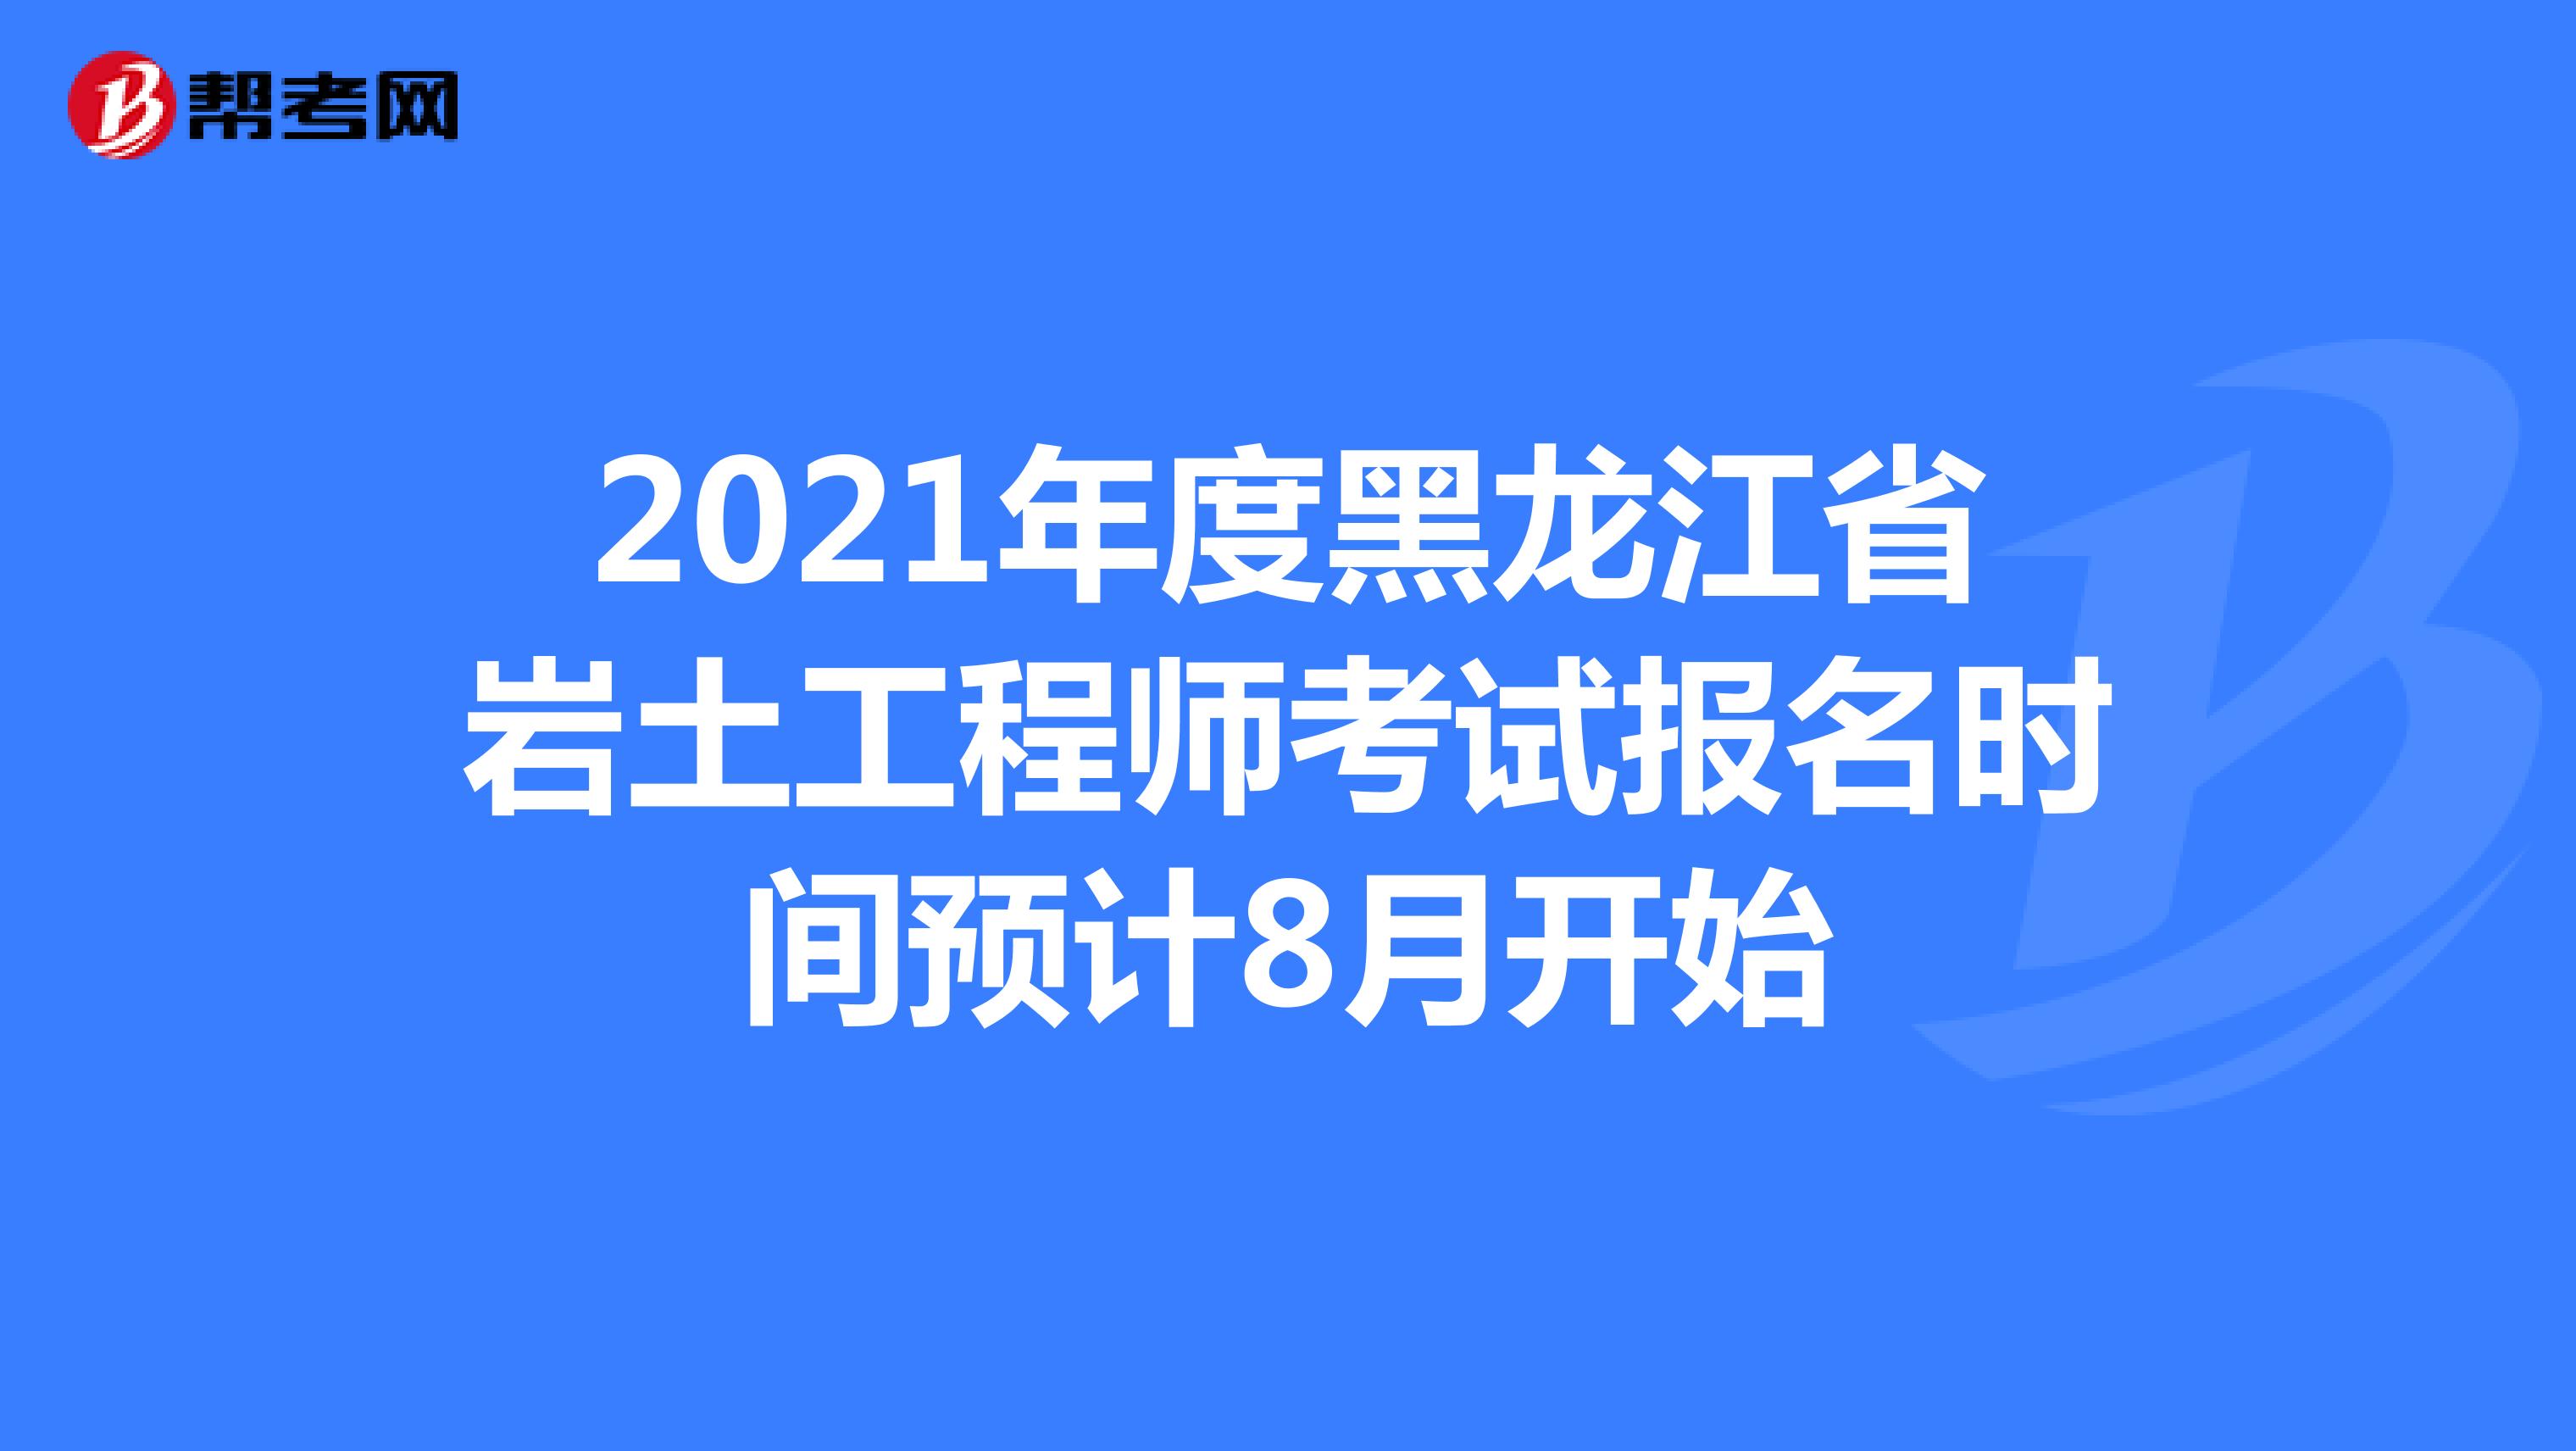 2021年度黑龙江省岩土工程师考试报名时间预计8月开始